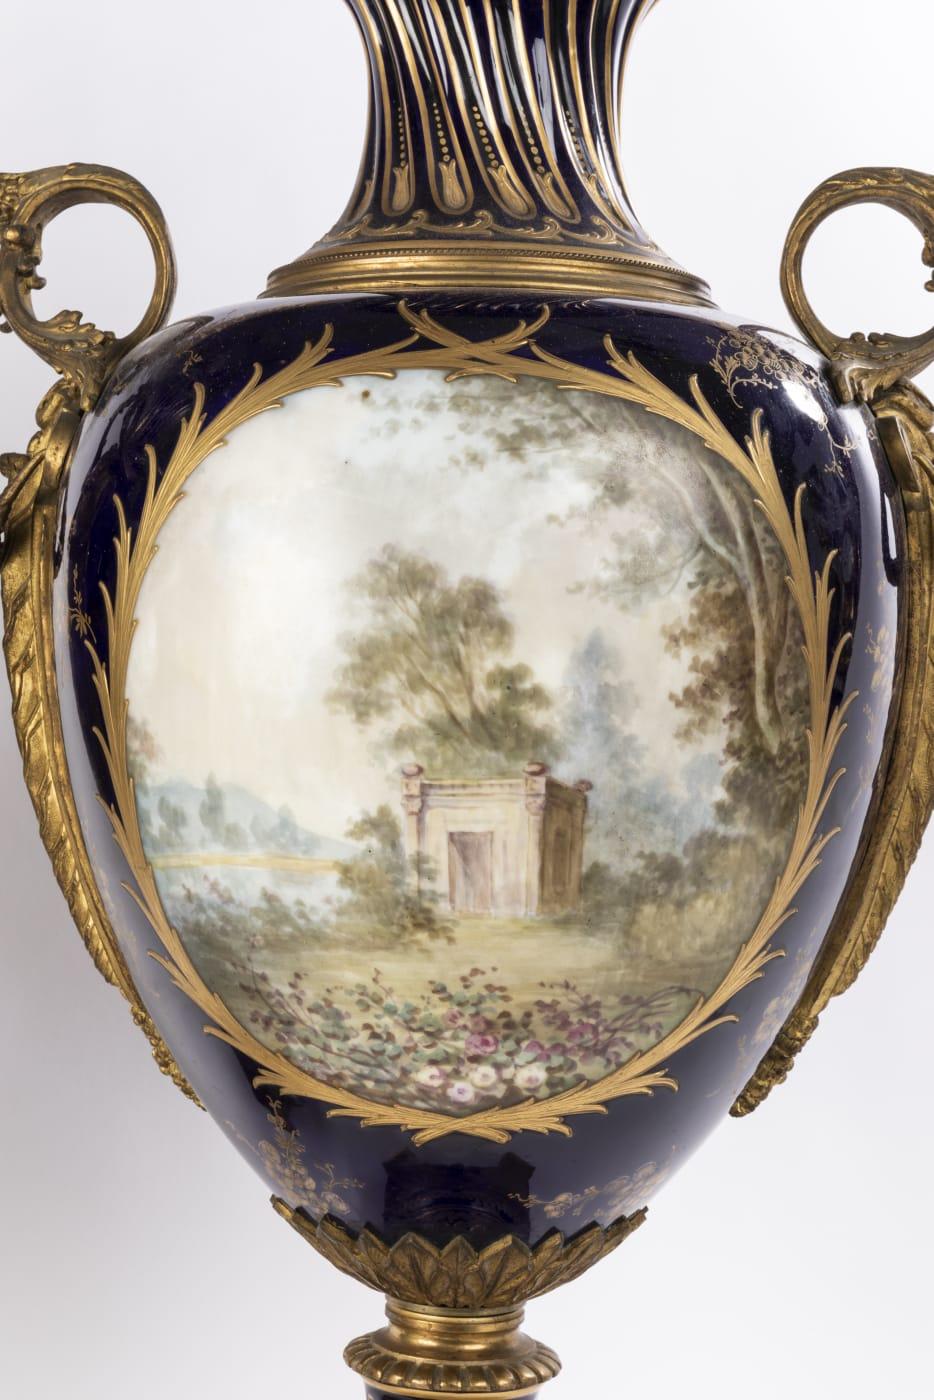 Zwei große und beeindruckende Porzellanvasen im französischen Sevres-Stil des 19. Jahrhunderts haben einen faszinierenden dunkelblauen Hintergrund. Jede Vase steht auf einem achteckigen Sockel, der mit komplizierten Mustern verziert ist. Die